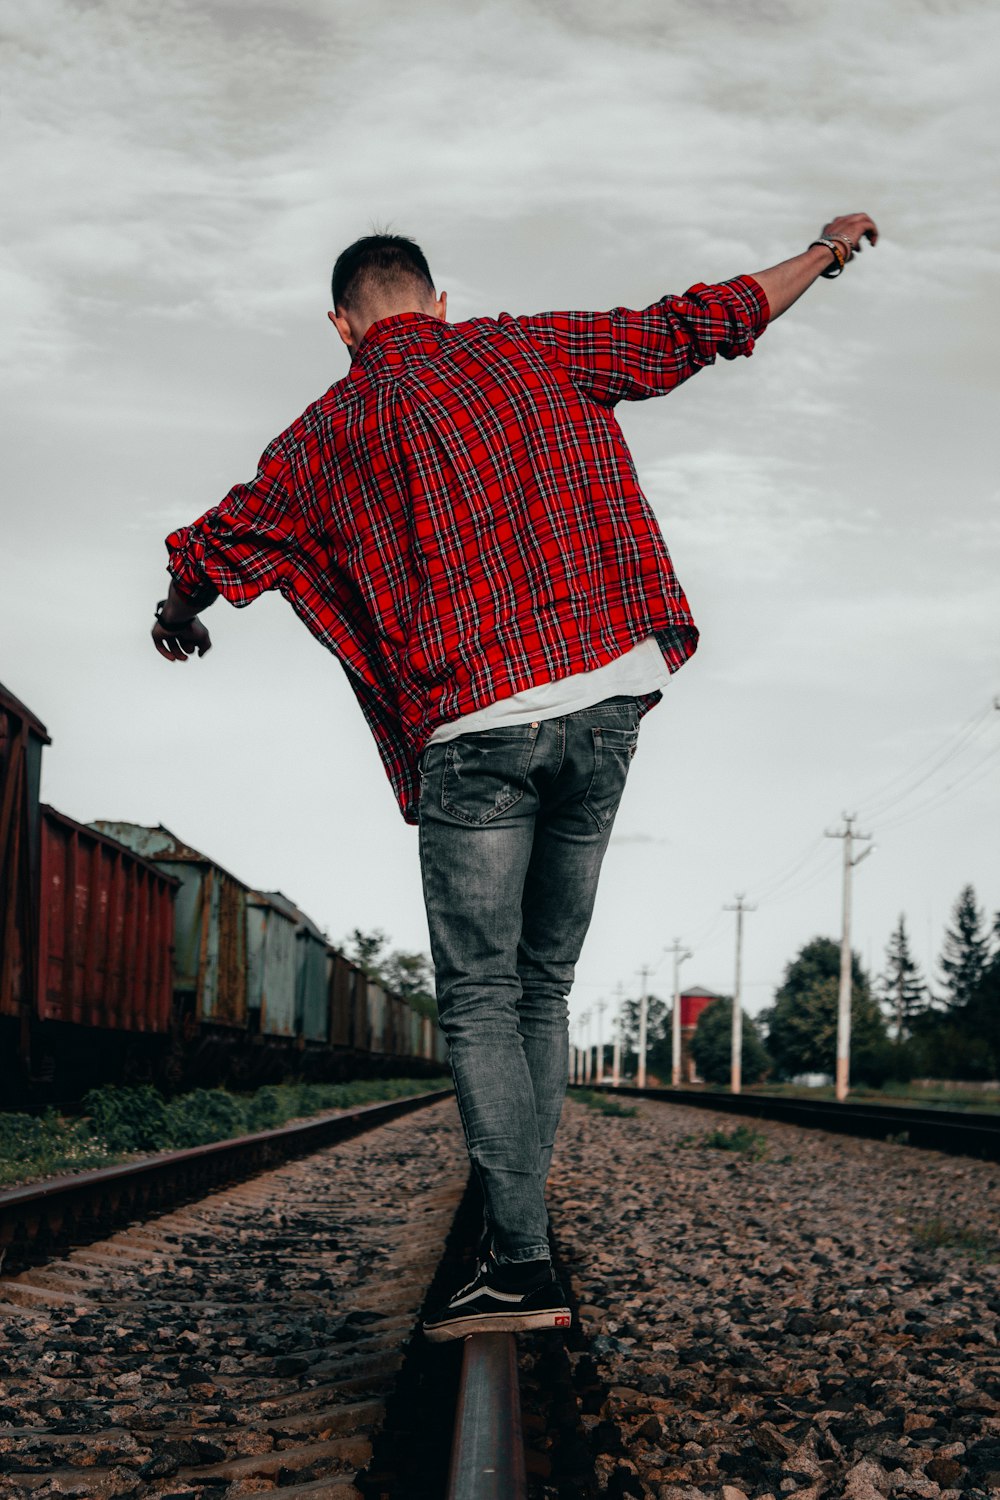 a man riding a skateboard down a train track